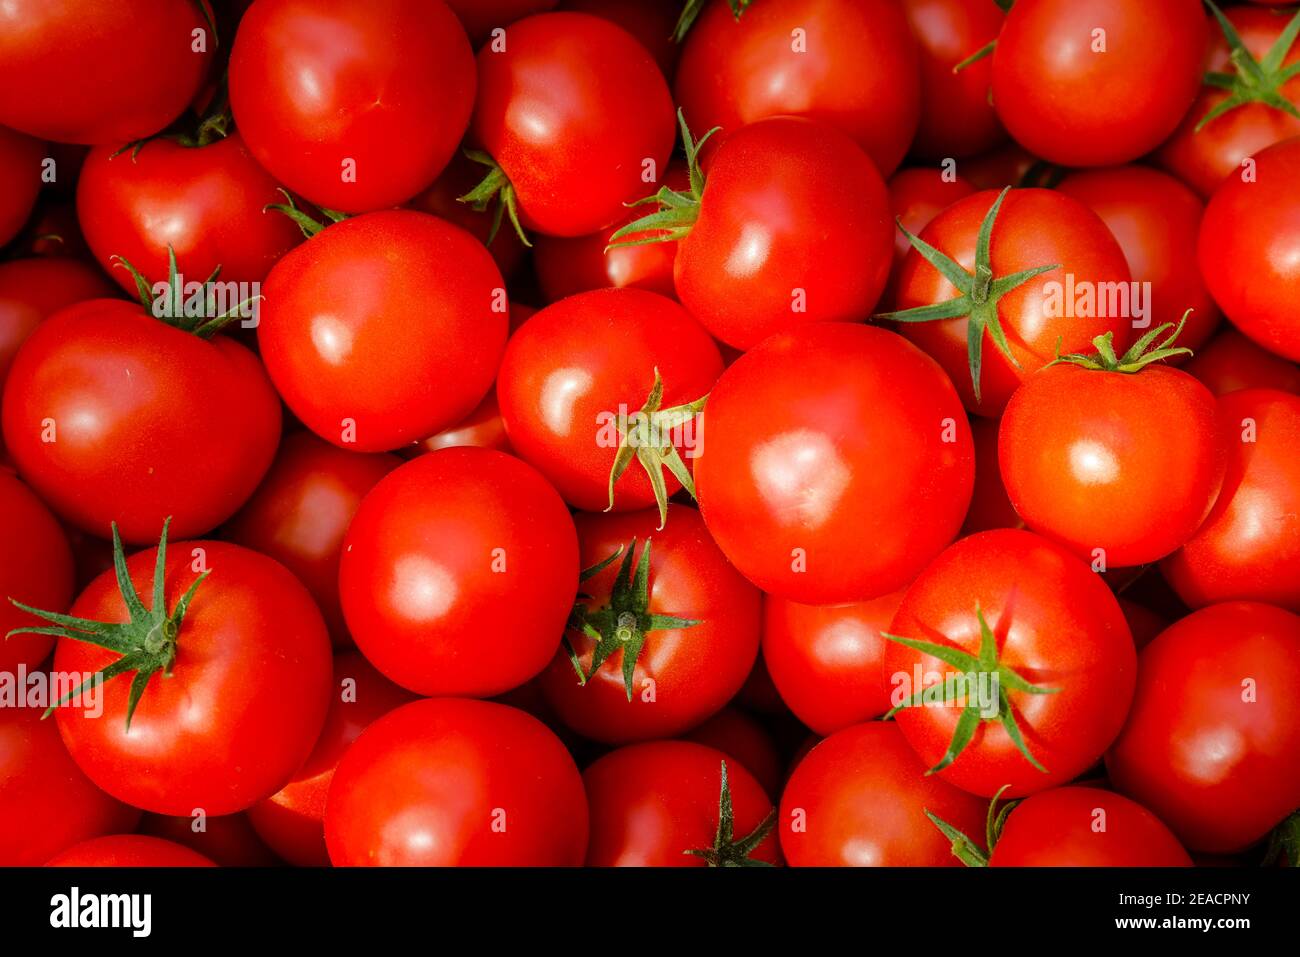 Wittichenau, alta Lusazia, Sassonia, Germania - vendemmia del pomodoro presso l'azienda agricola e l'allevamento Domanja, pomodori maturi in scatola. Foto Stock